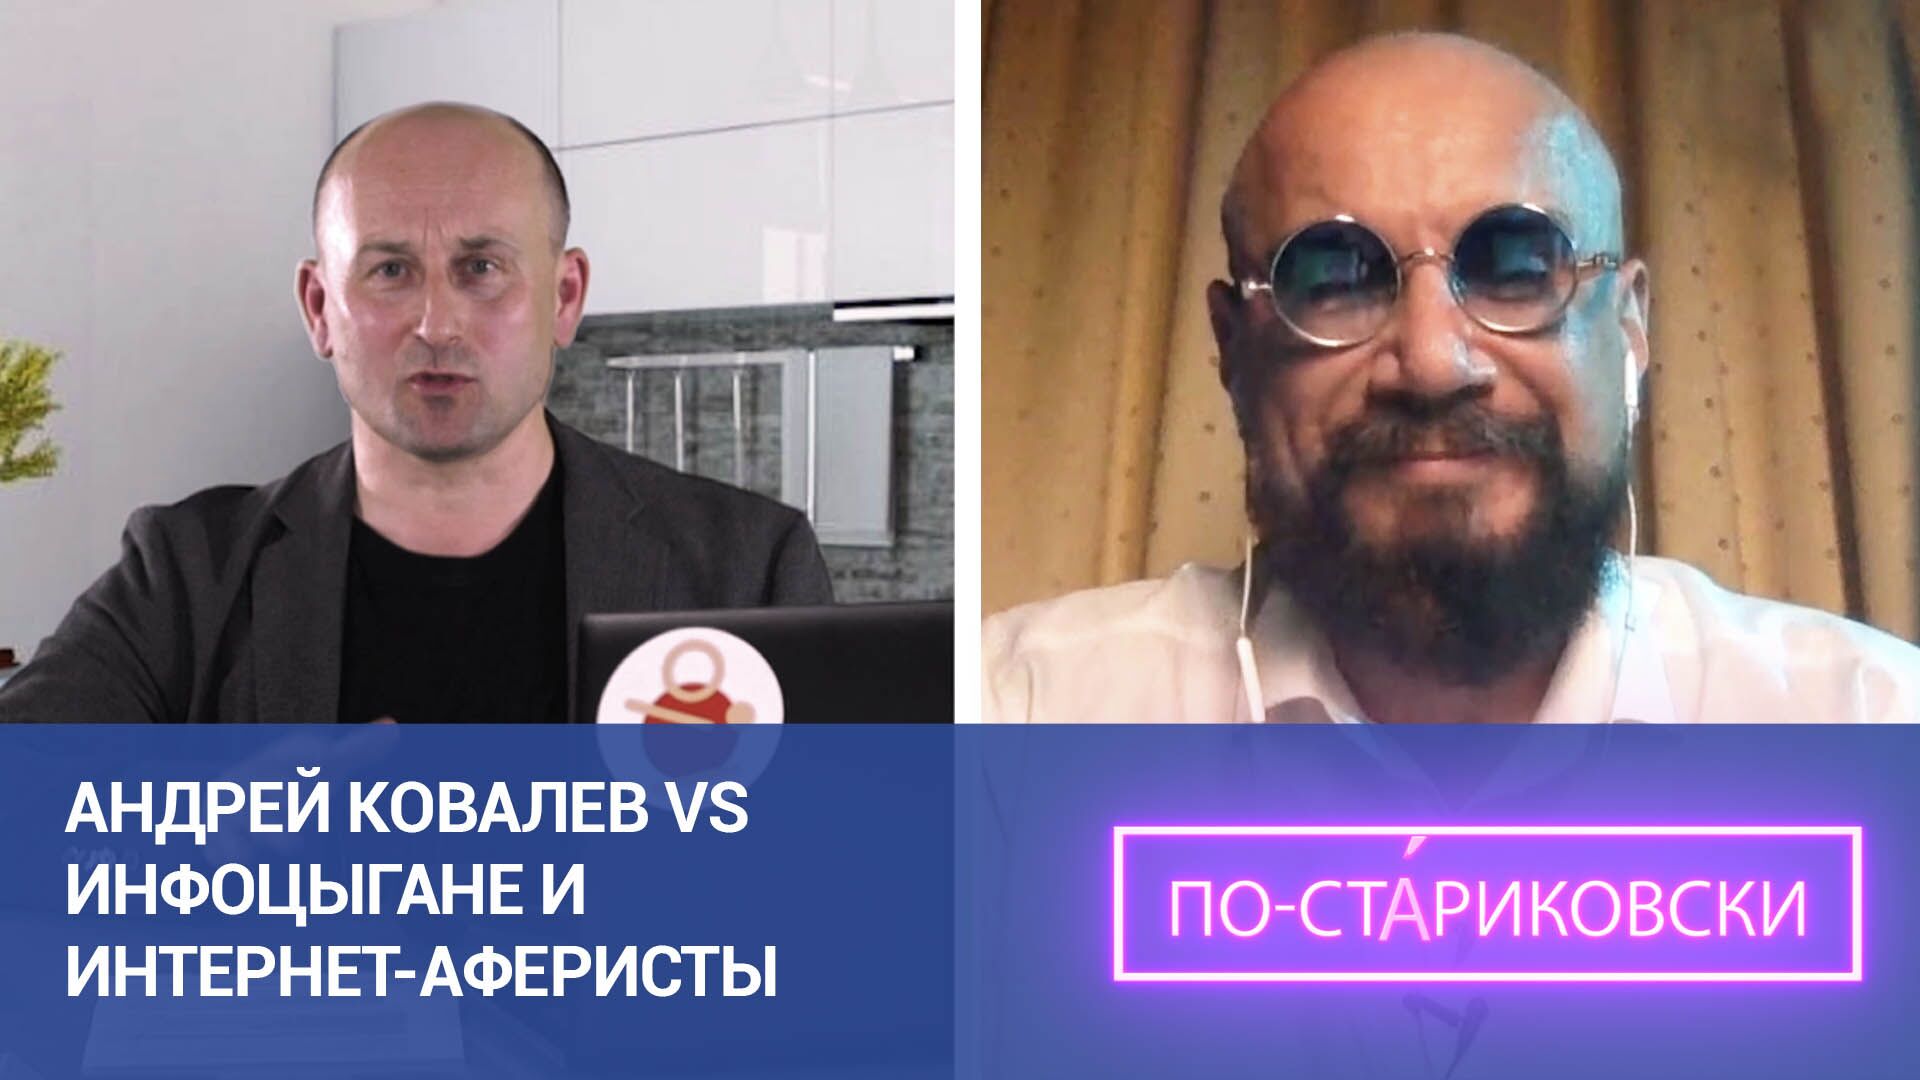 Андрей Ковалев vs инфоцыгане и интернет-аферисты. 